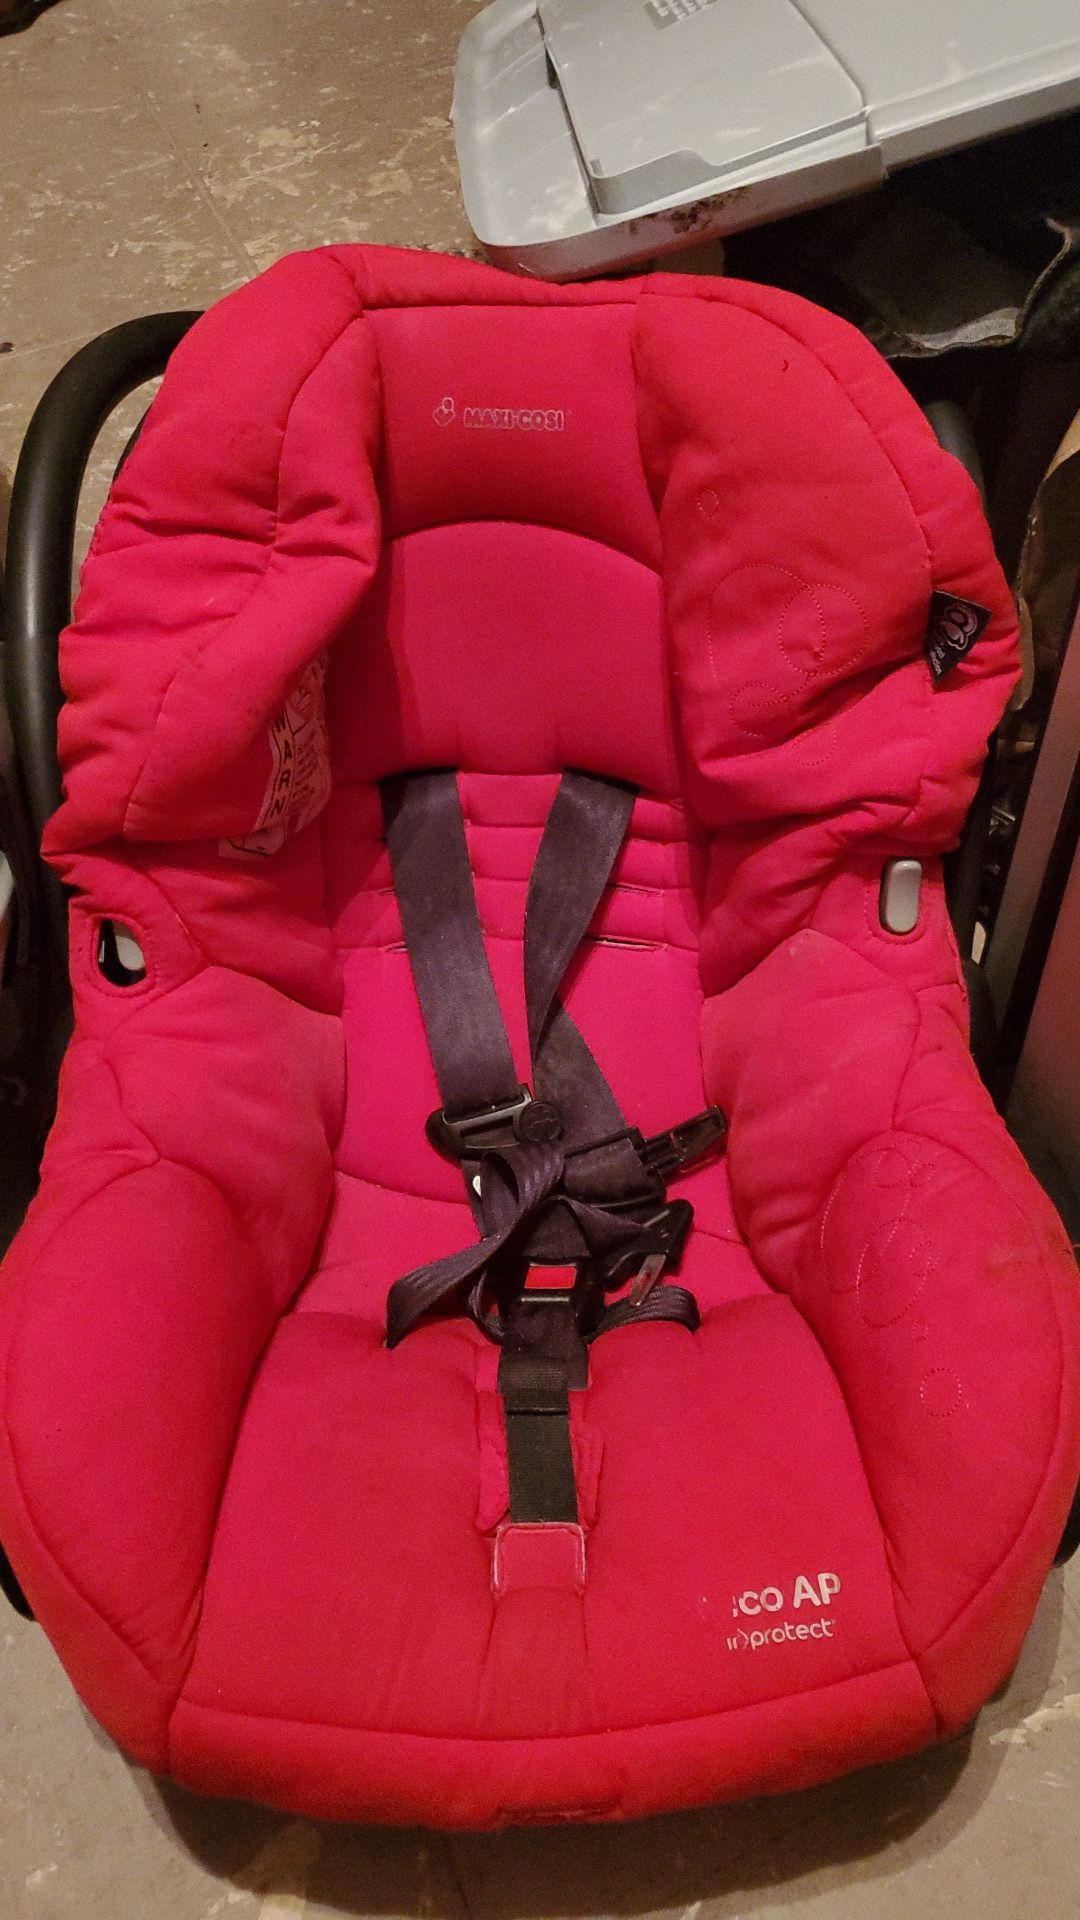 Maxi cosi baby car seat